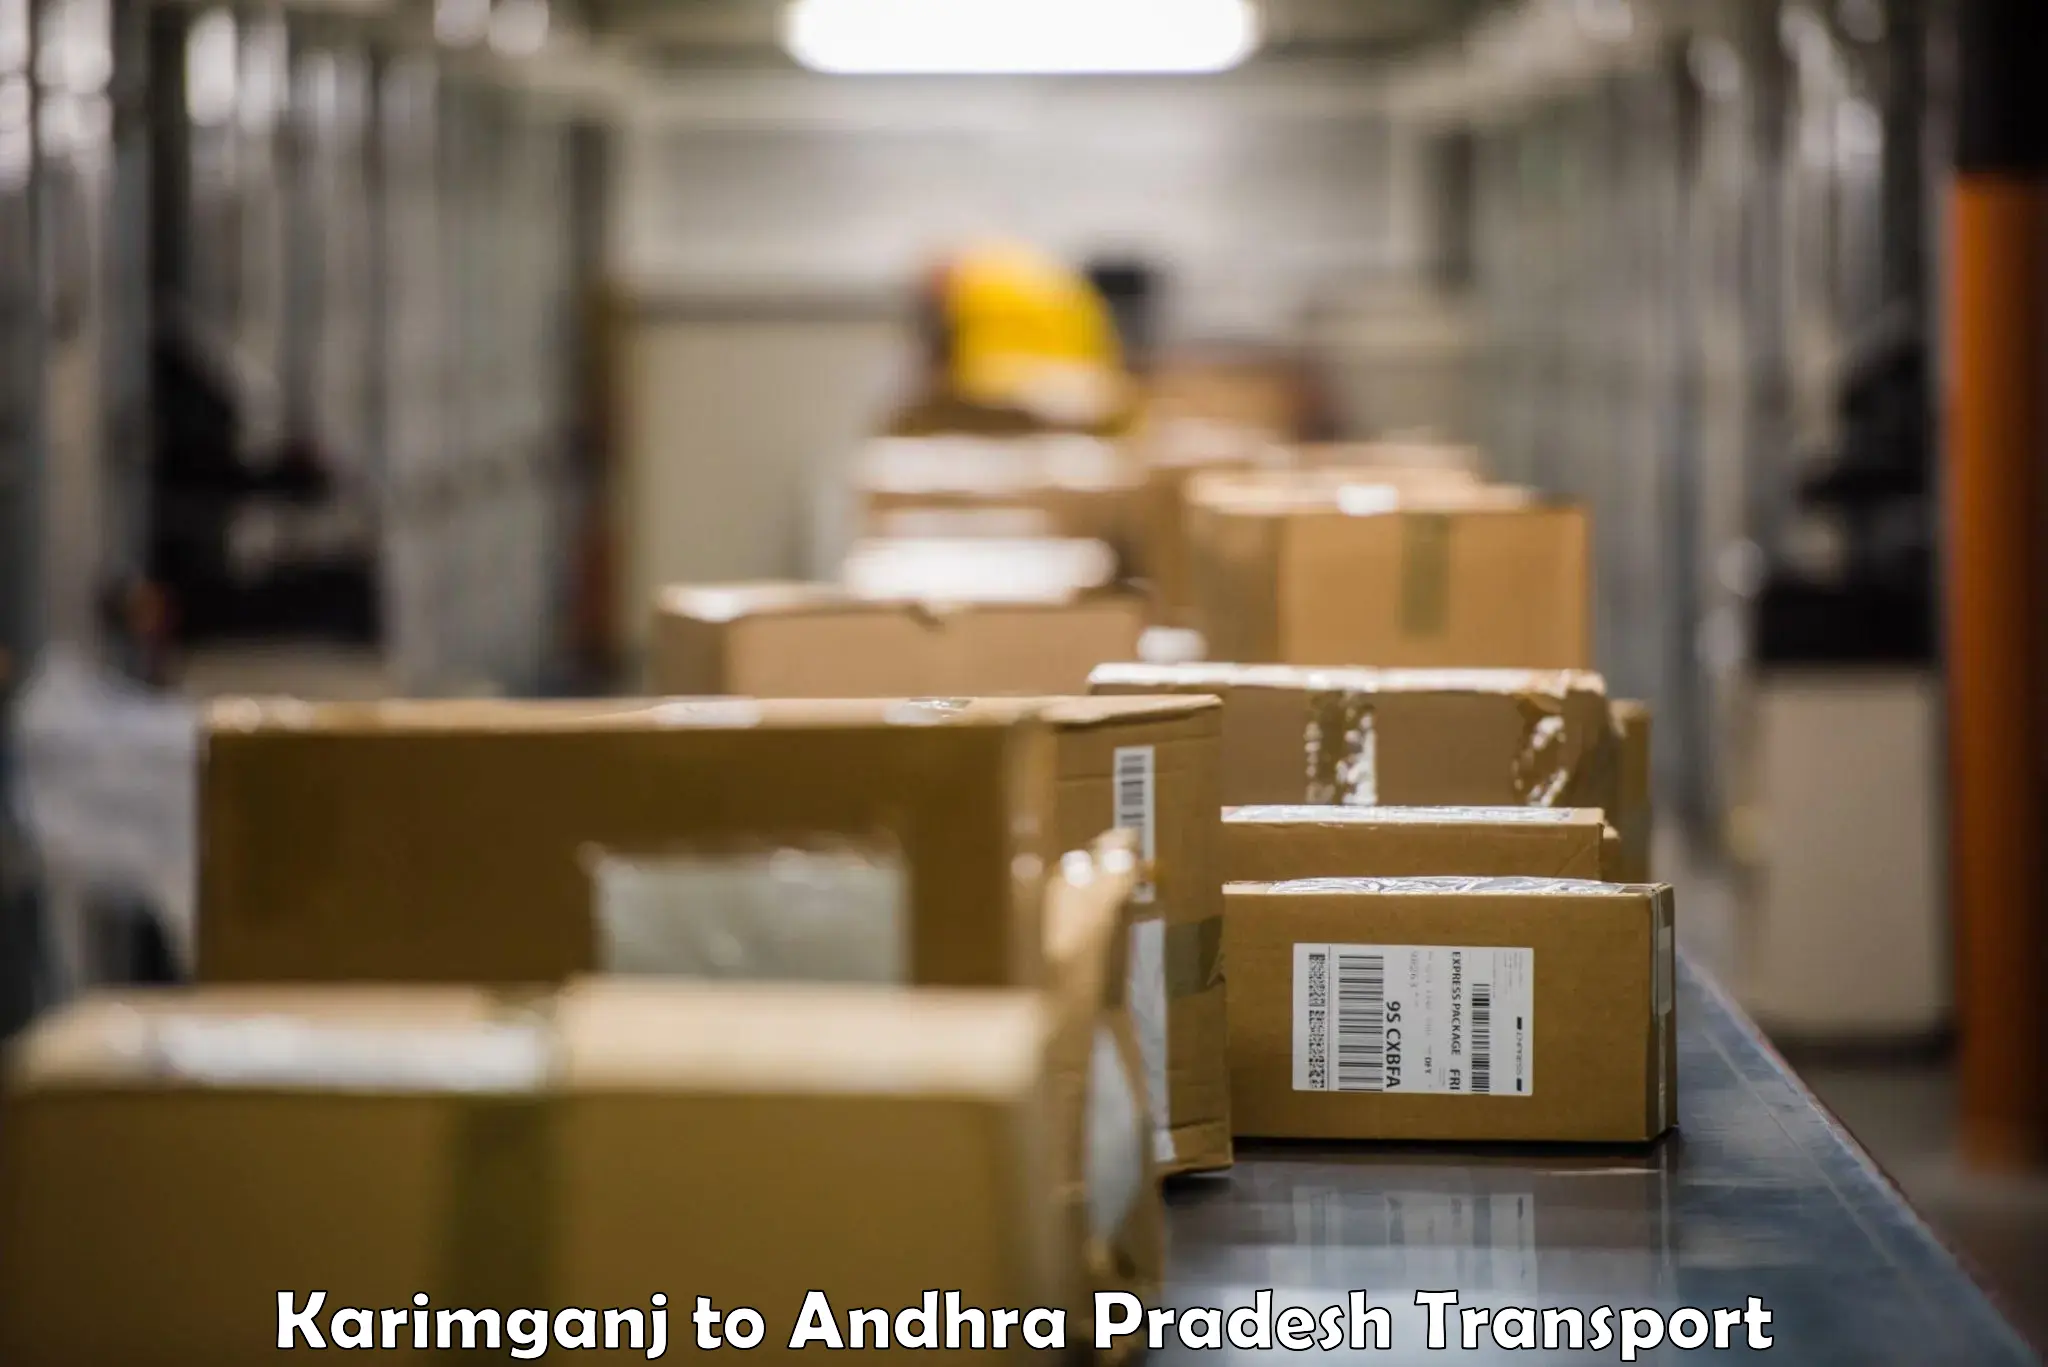 Goods delivery service Karimganj to Garividi